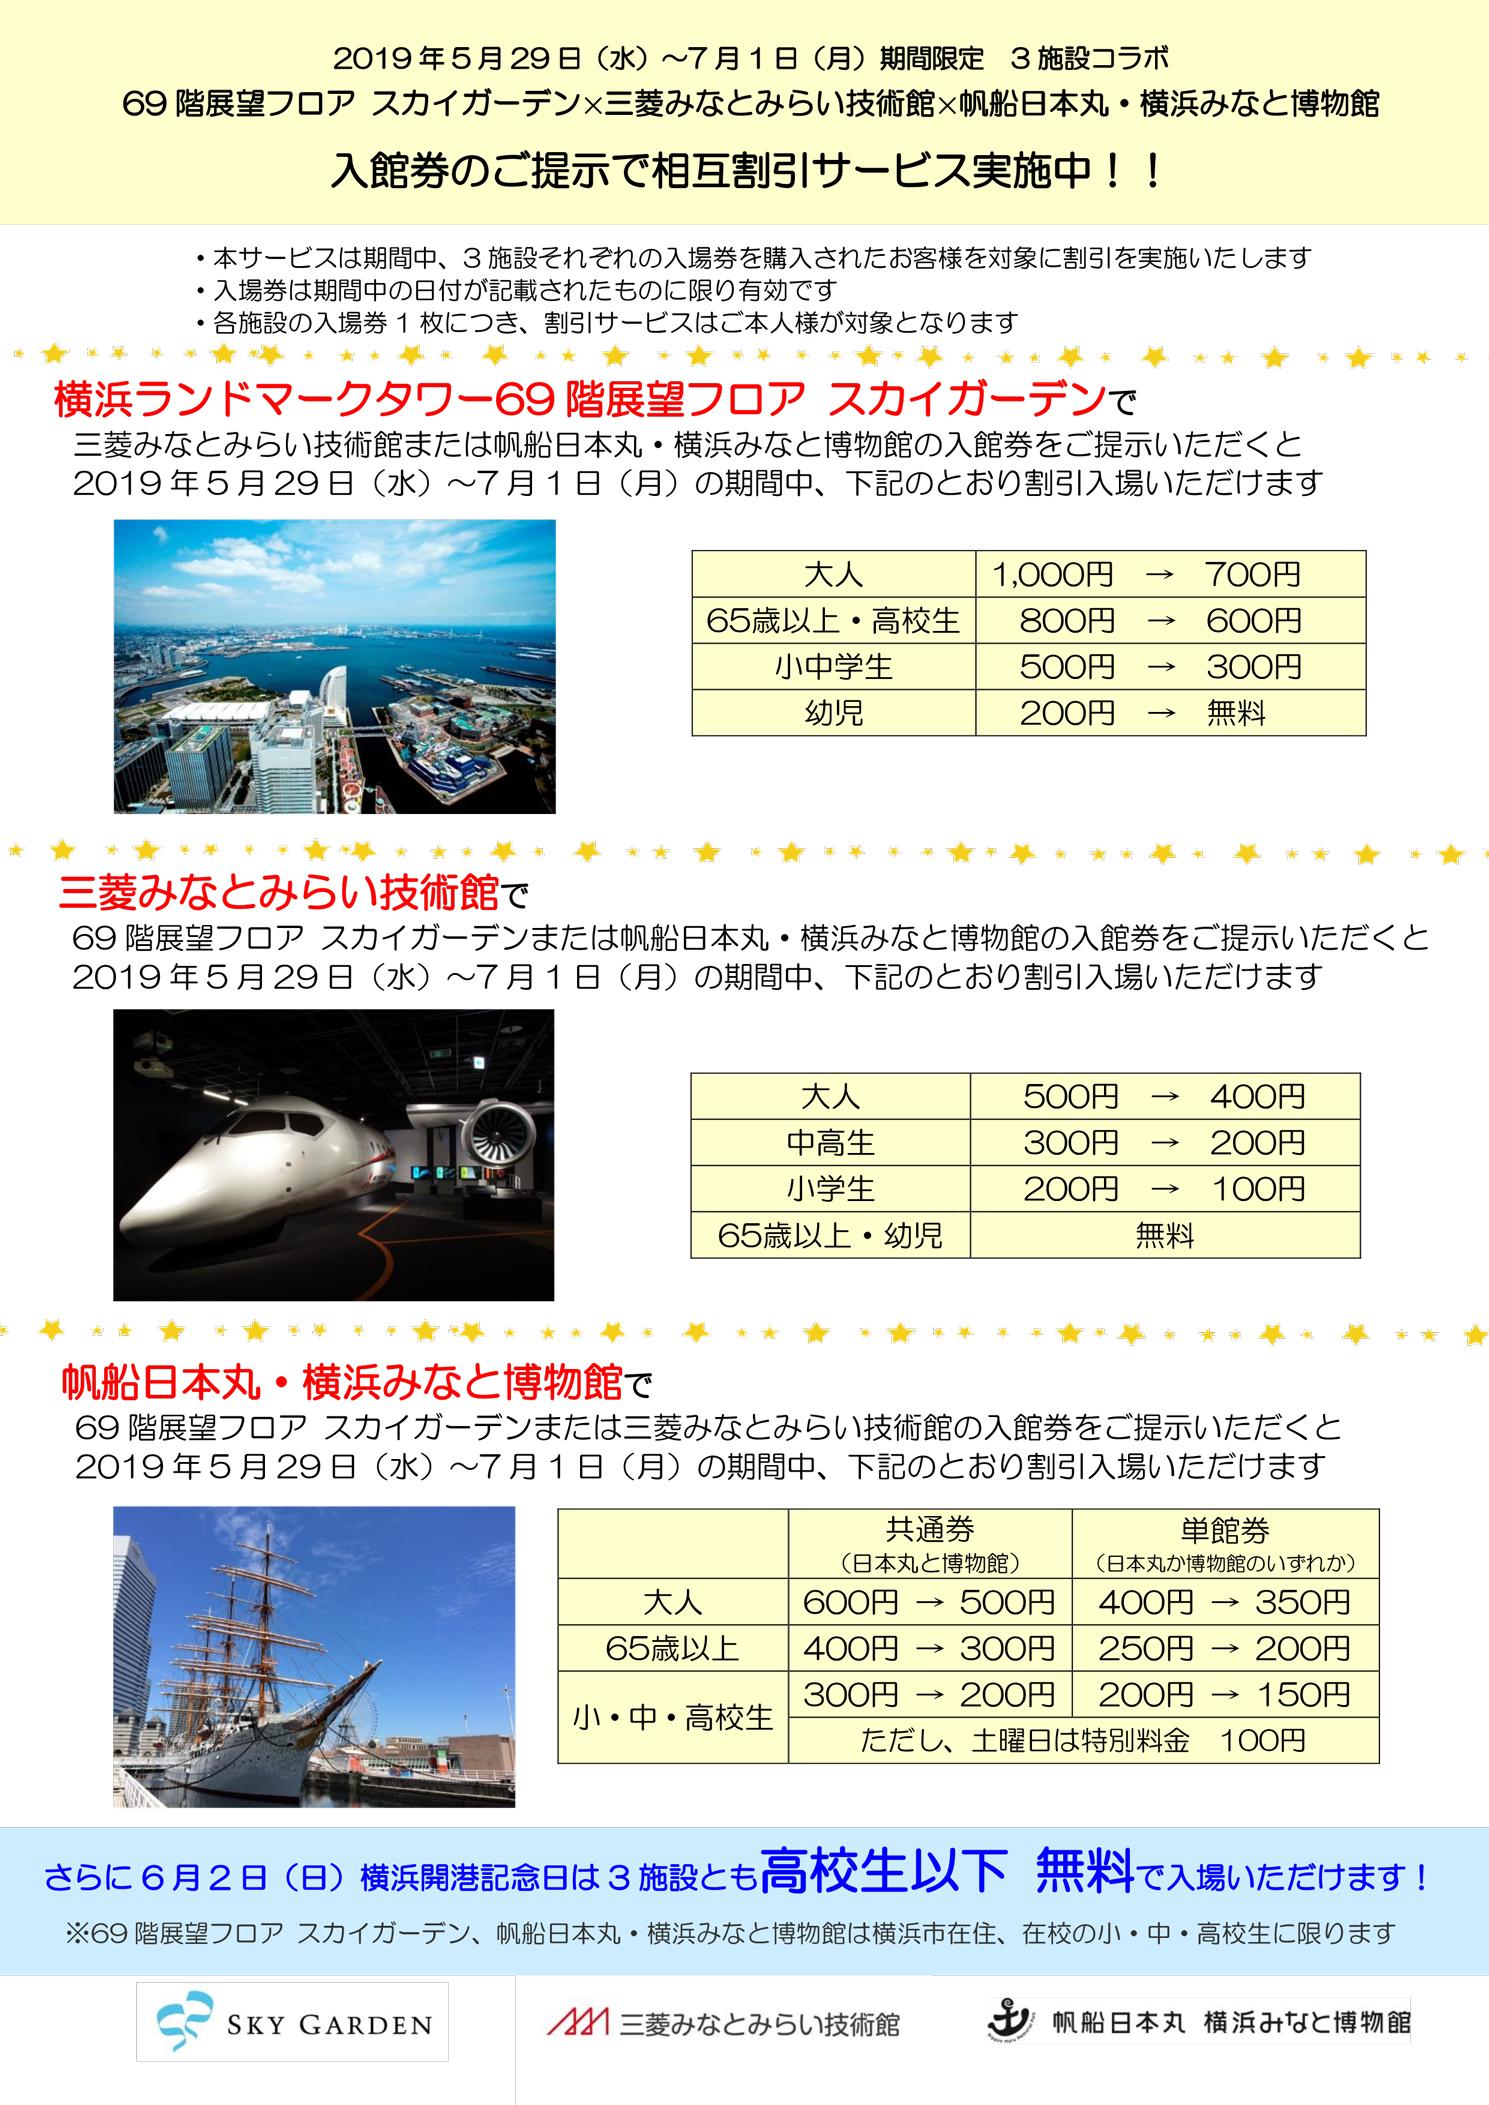 帆船日本丸 横浜みなと博物館 5 29 7 1の期間 三菱みなとみらい技術館 スカイガーデンと相互割引を実施します